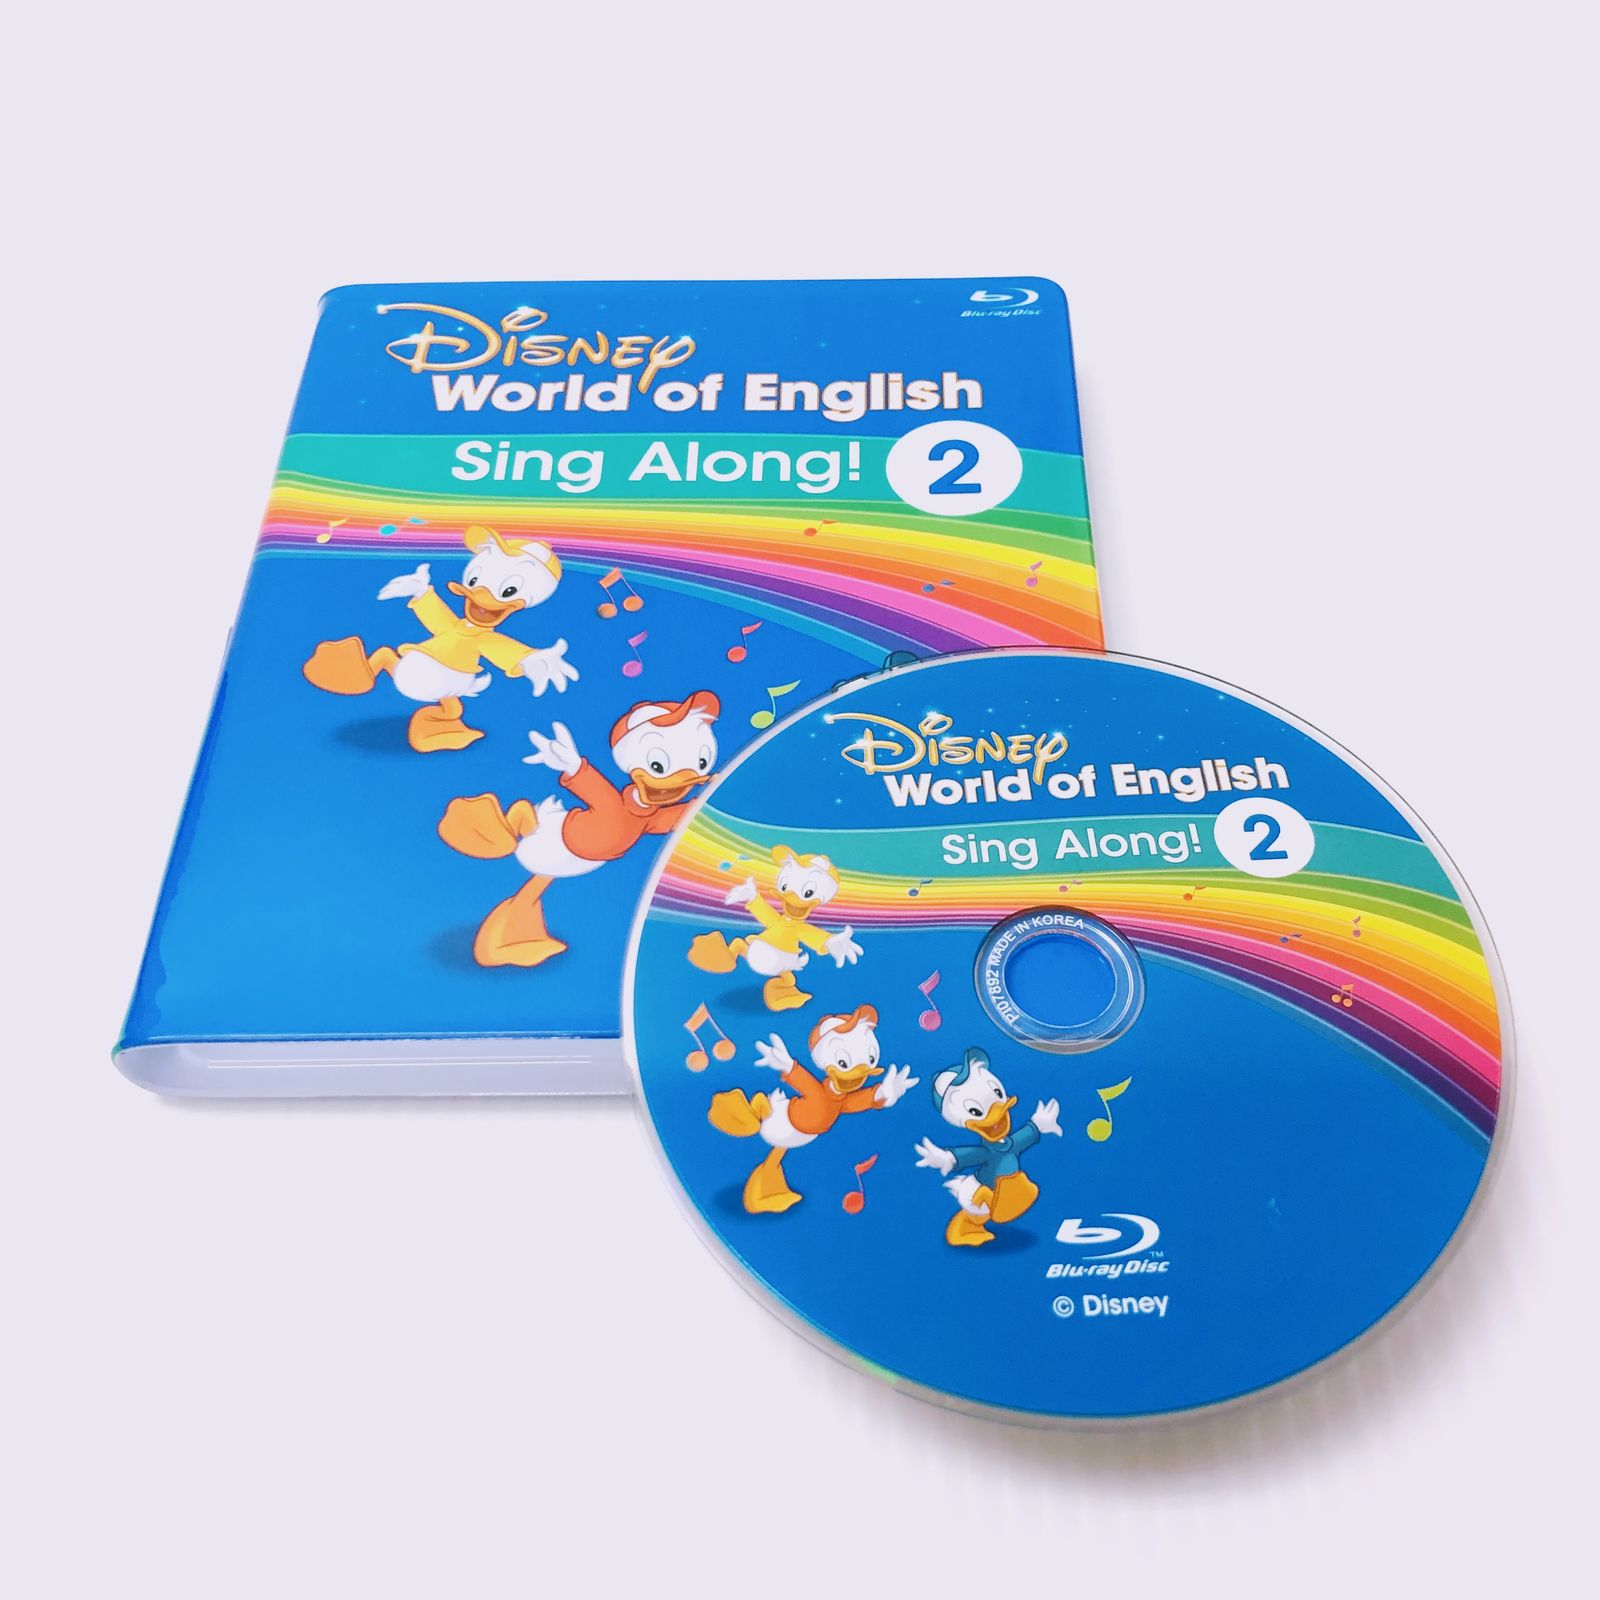 ディズニー英語システム シングアロング Blu-ray 2巻 英語教材 DWE b 